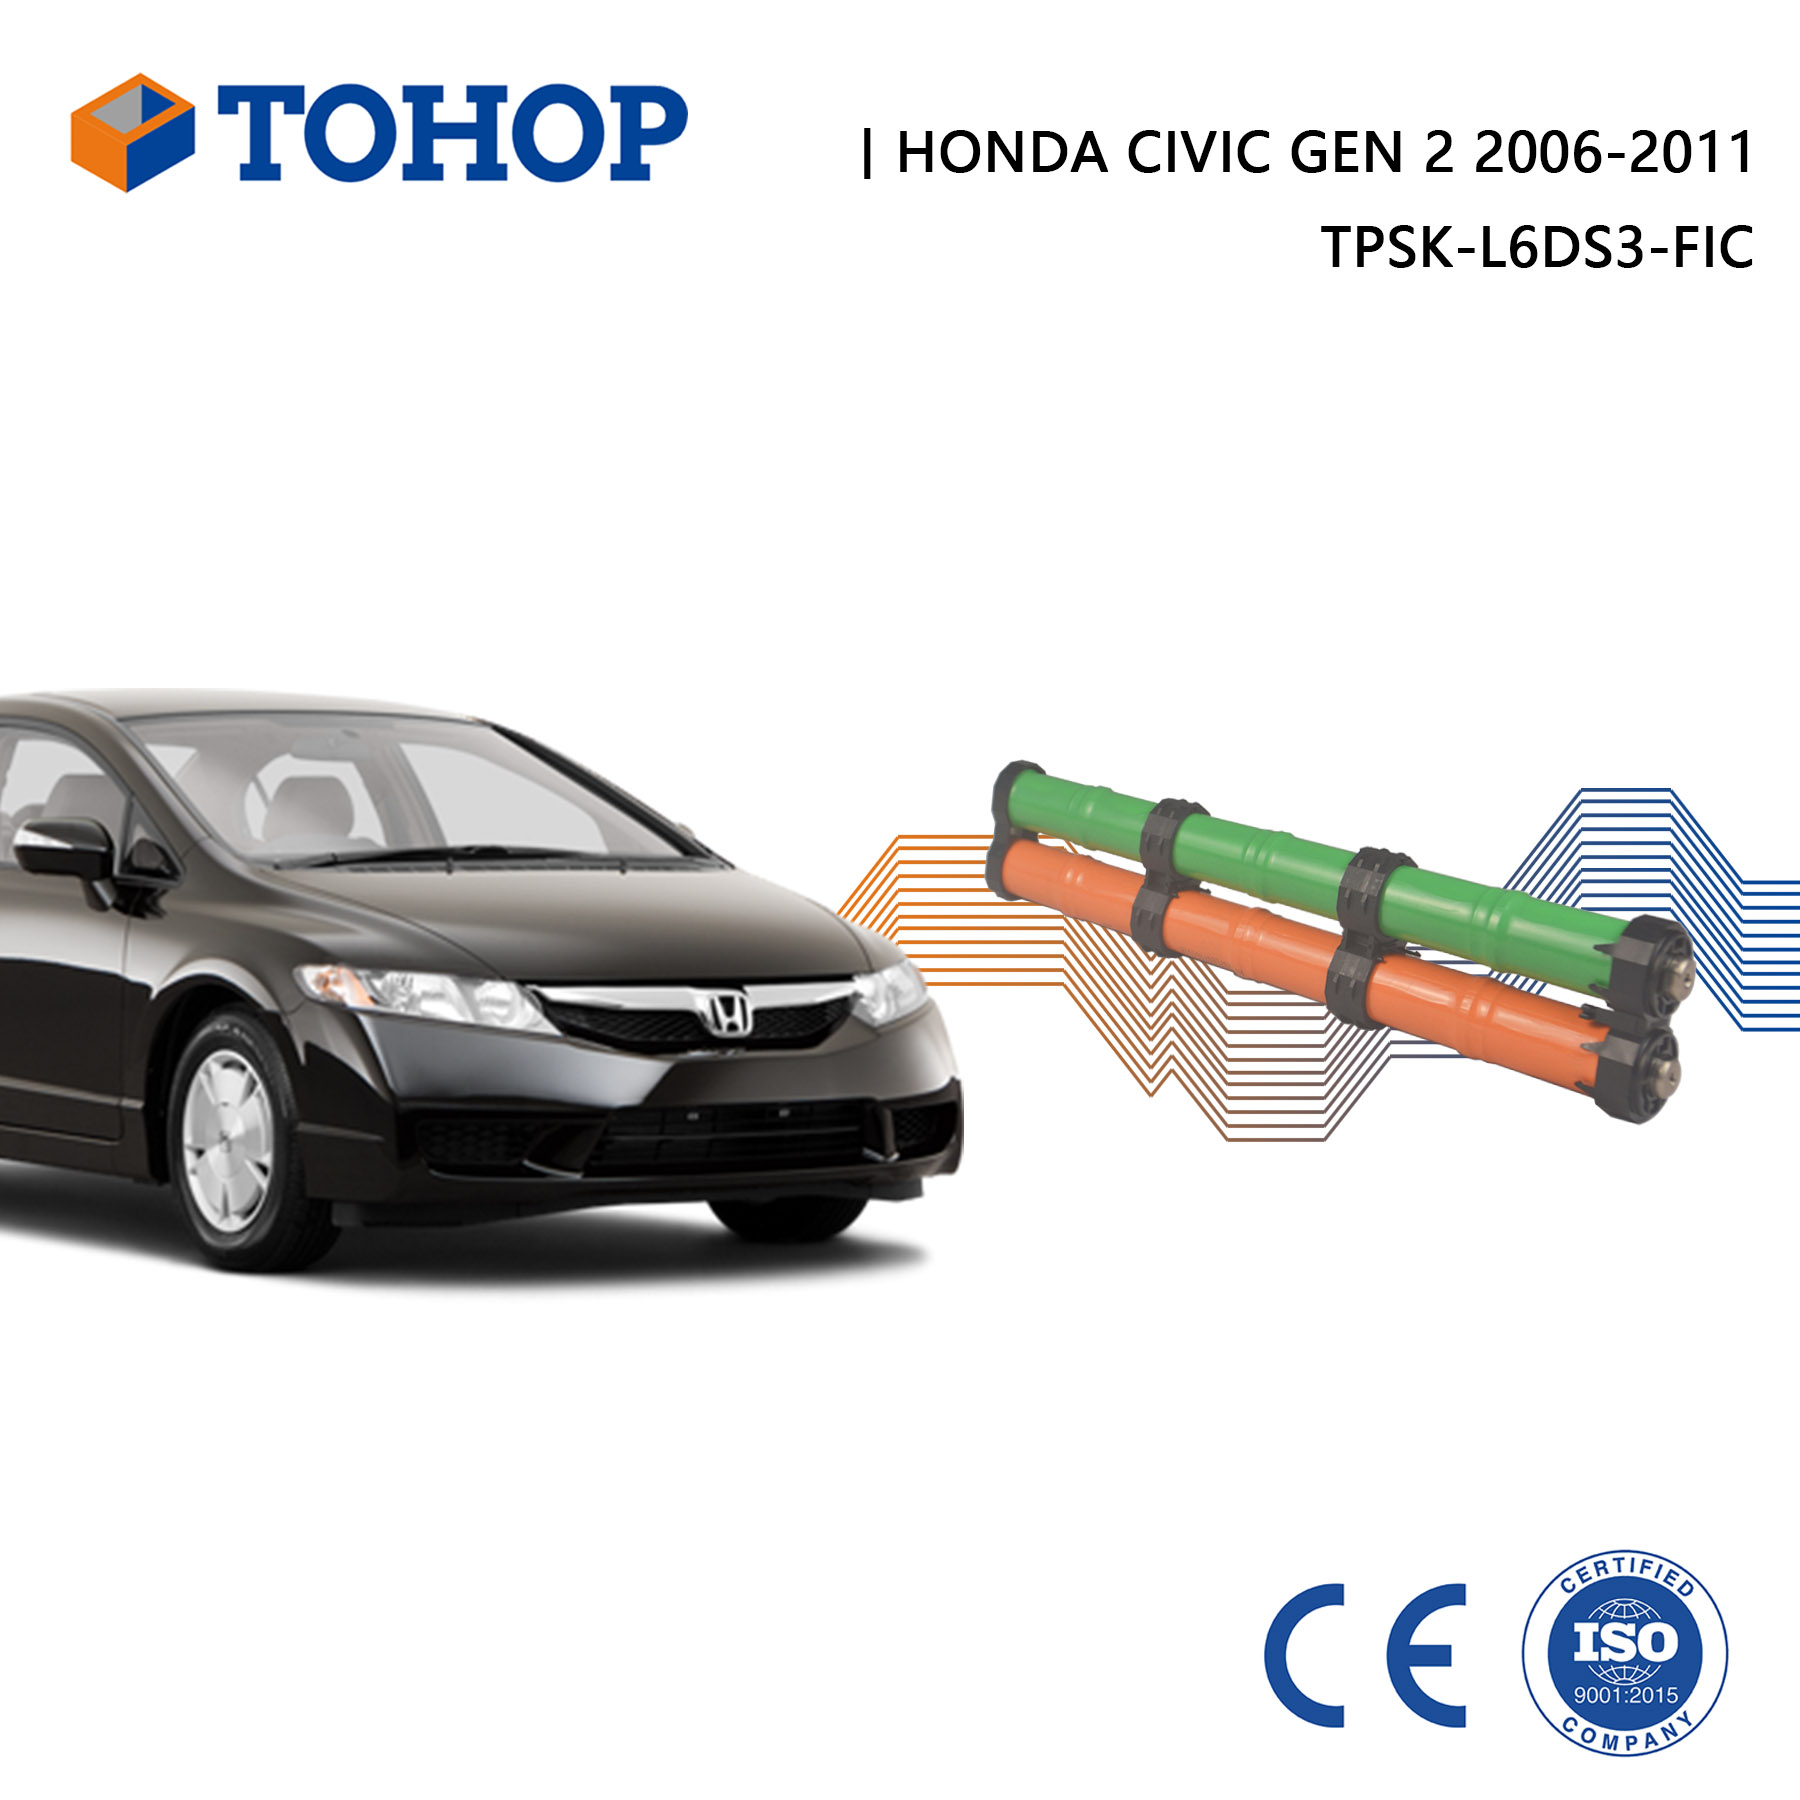 Zylindrischer Gen.2 Honda Civic 2008 Hybrid-Autobatteriesatz für Fahrzeug